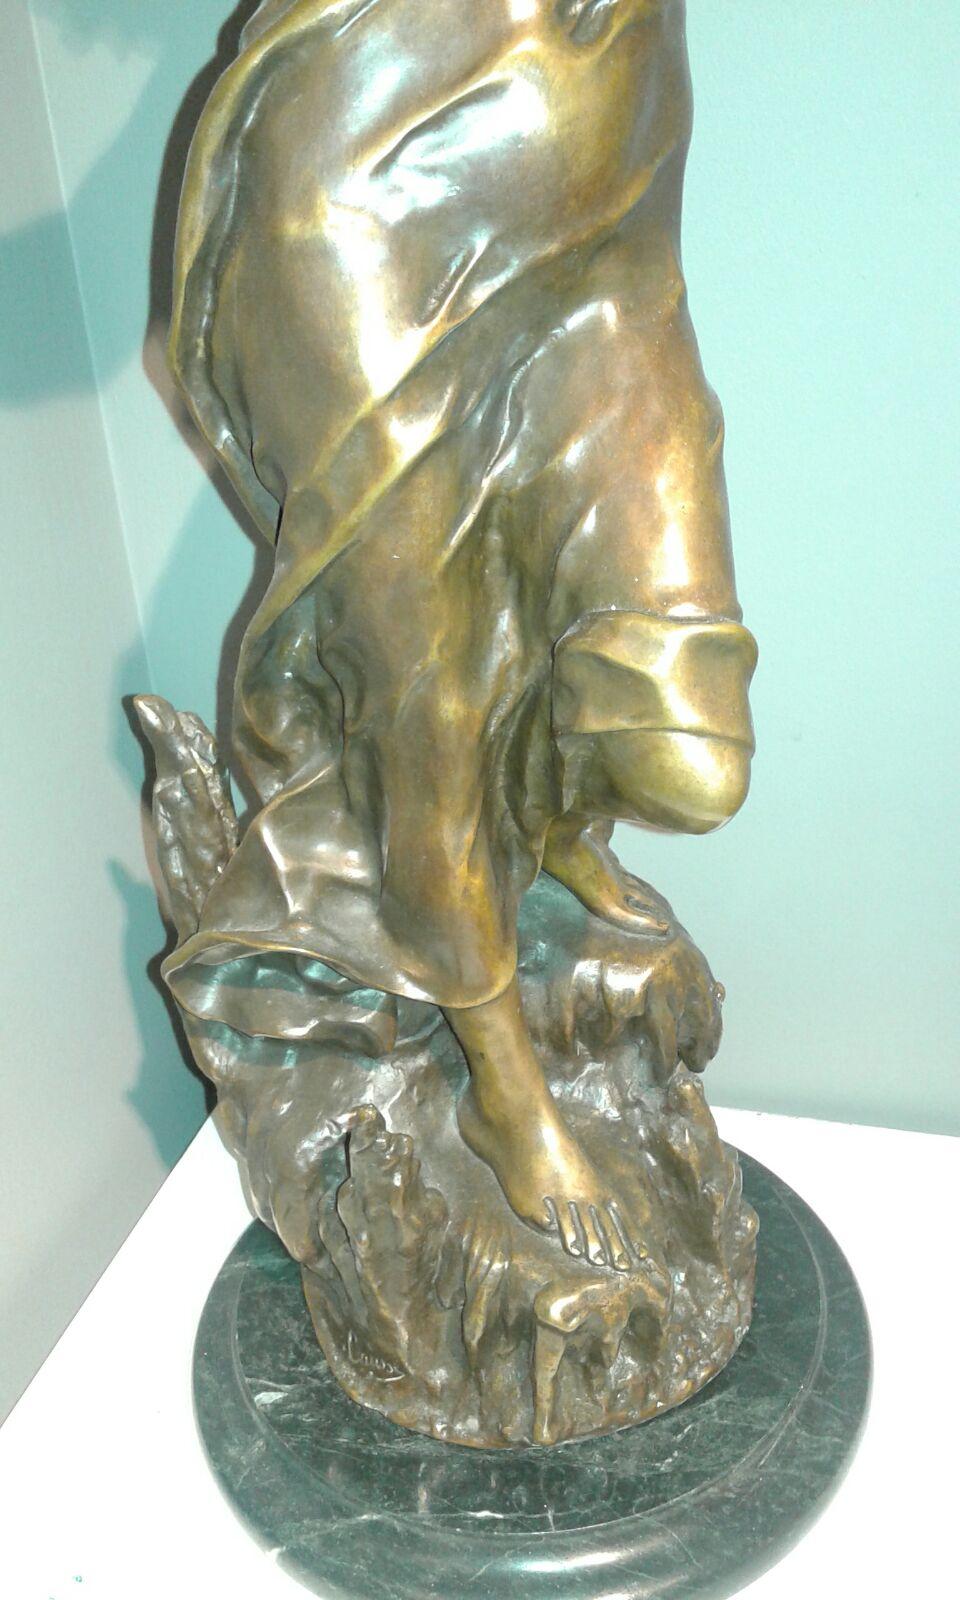 Diosa. Original Bronze mehrerer Arten. Eskulptur Modernist
Julien Caussé (auch Cadet-Julien Caussé, Cadet Julien Caussé und Julien Cadet Caussé) (1869-1914) war ein produktiver französischer Bildhauer des Jugendstils im späten 19. und frühen 20.